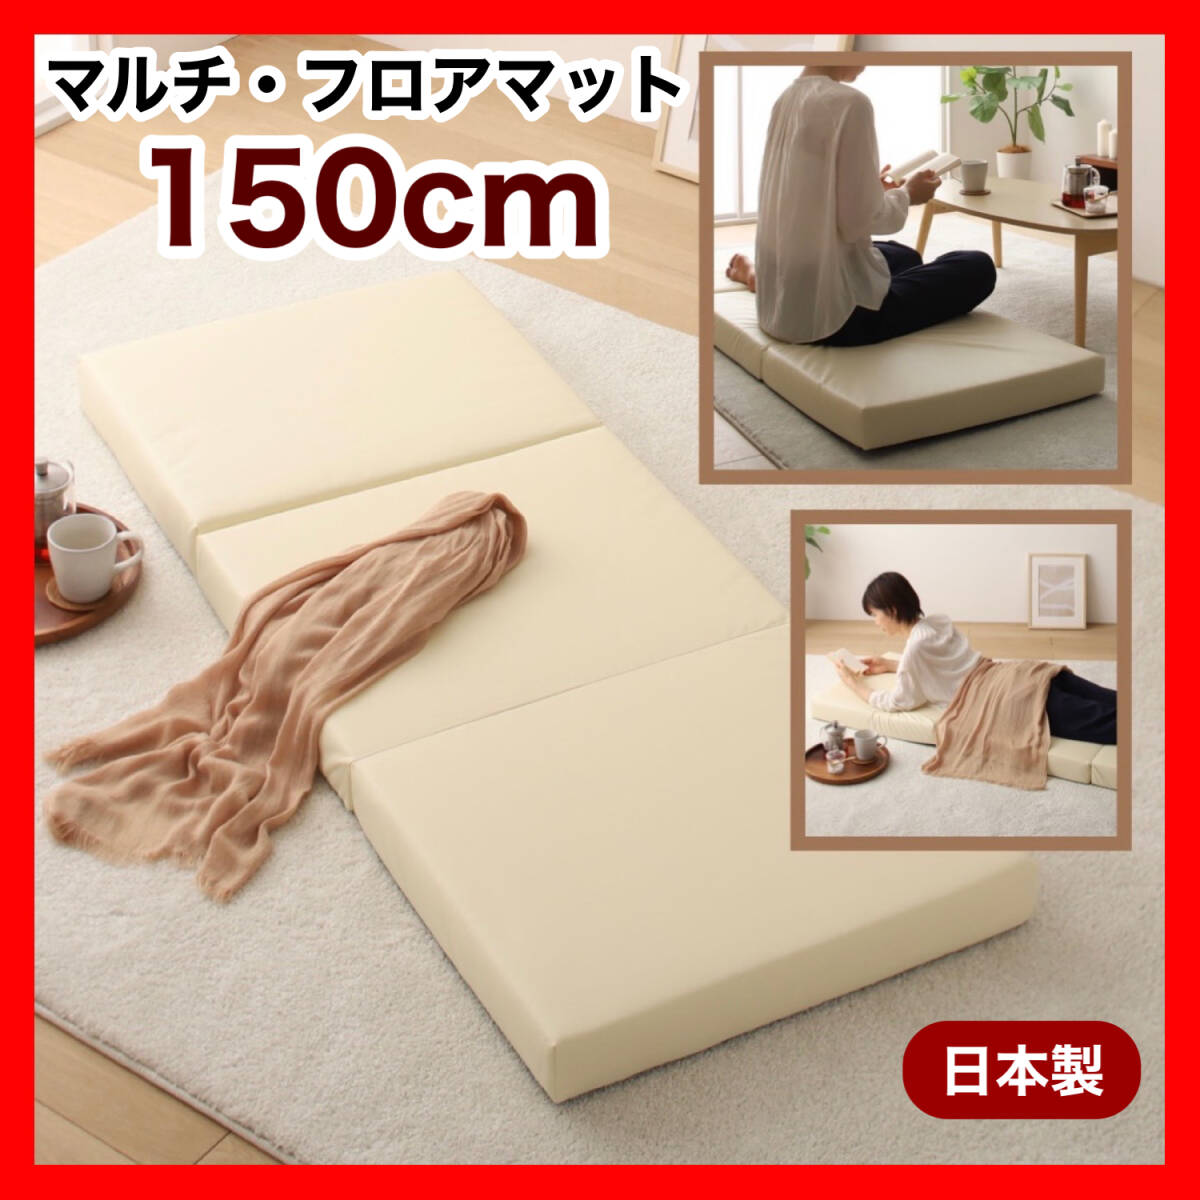  новый товар коврик на пол 150cm подушка коврик кожа подушка для сидения диван подушка коврик три складывать днем . подушка лежать на полу диван ребенок baby 